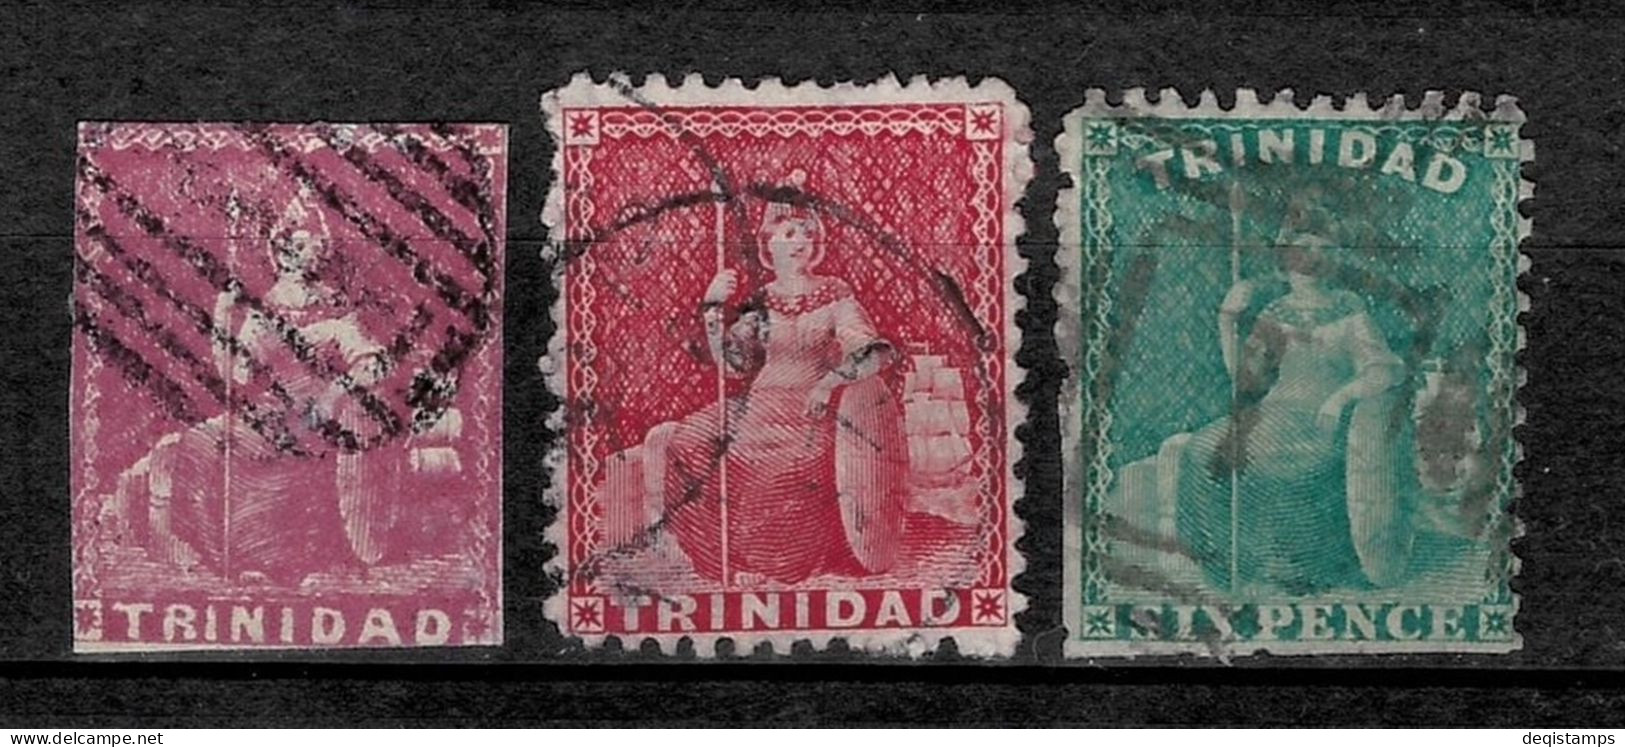 Trinidad And Tobago Stamps 1859-60 Year  Used - Trinidad & Tobago (...-1961)